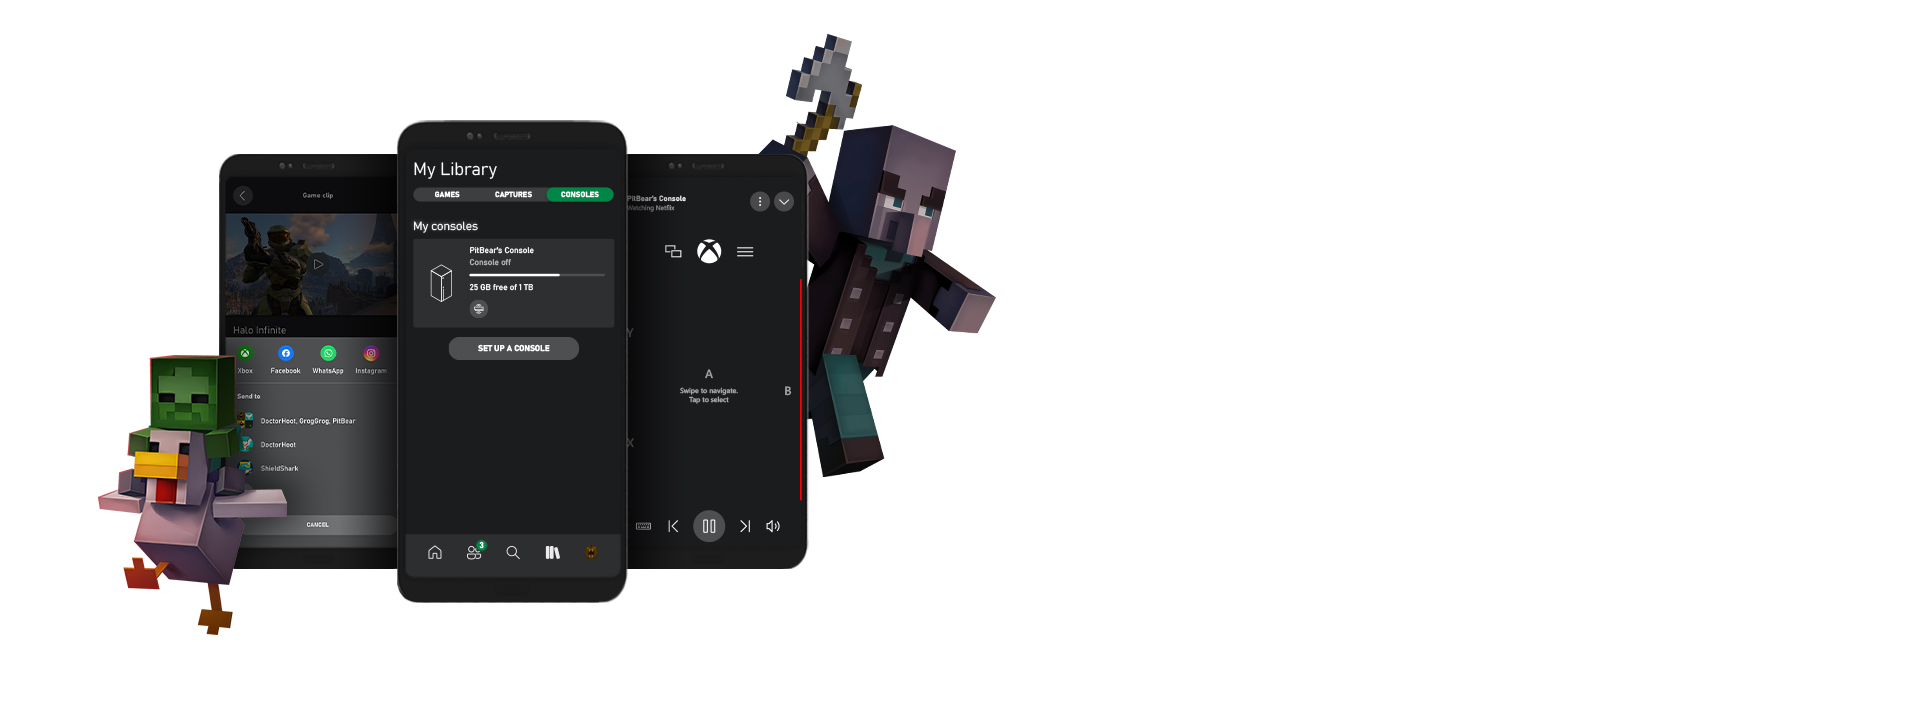 Personnages Minecraft entouré par plusieurs captures d’écran de l’application Xbox pour appareil mobile.